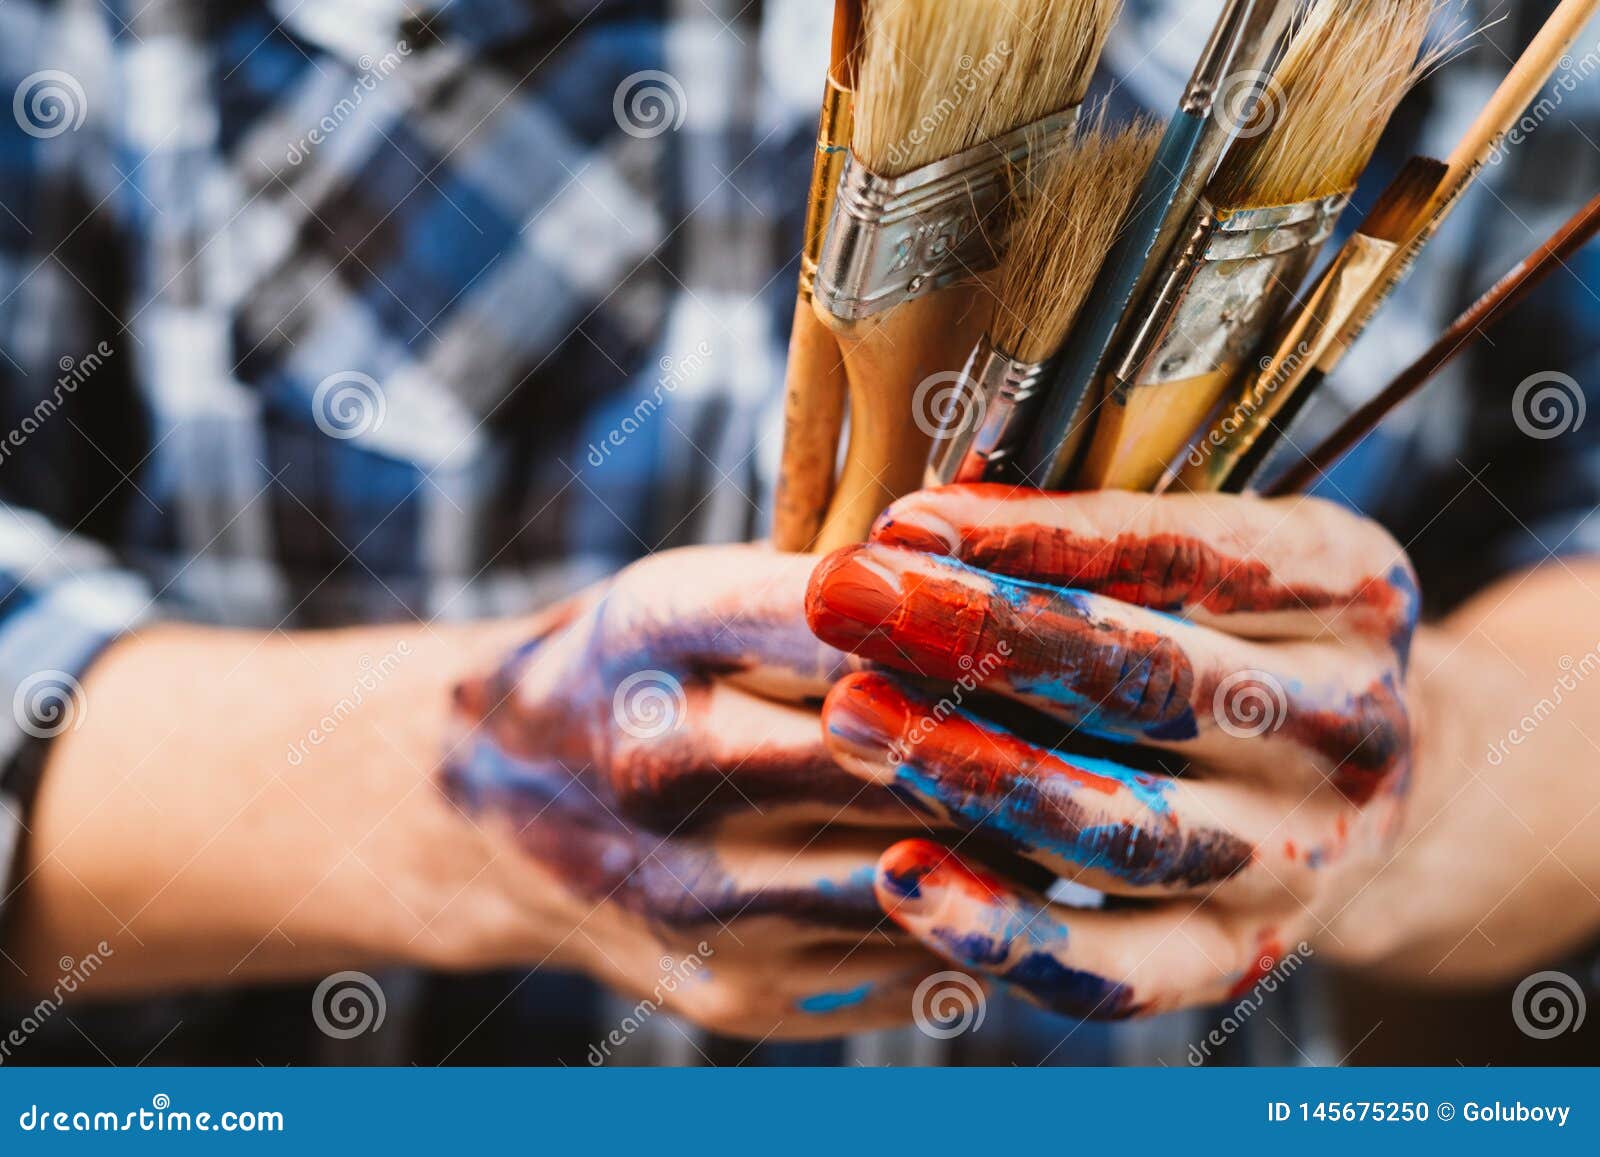 Artist Painting Tools